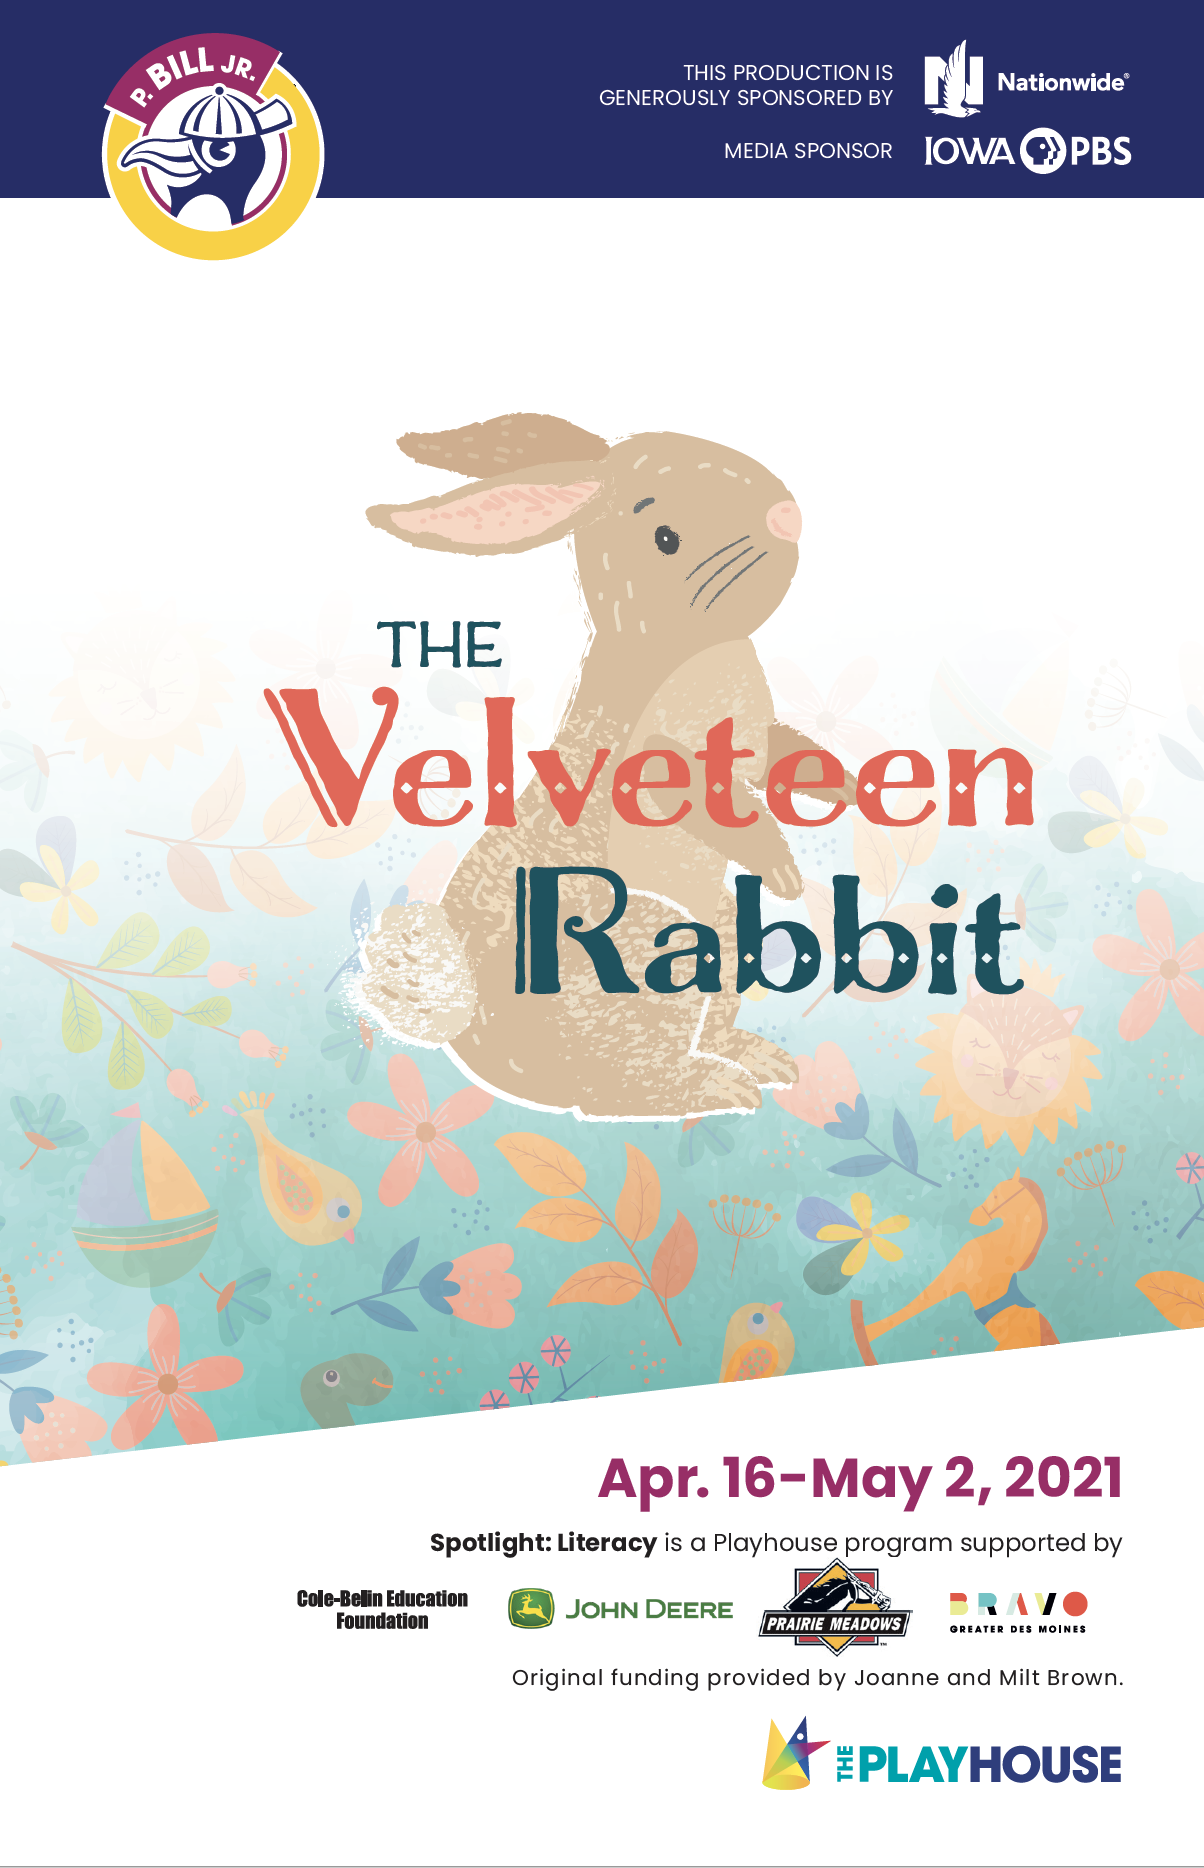 The Velveteen Rabbit Video-on-demand